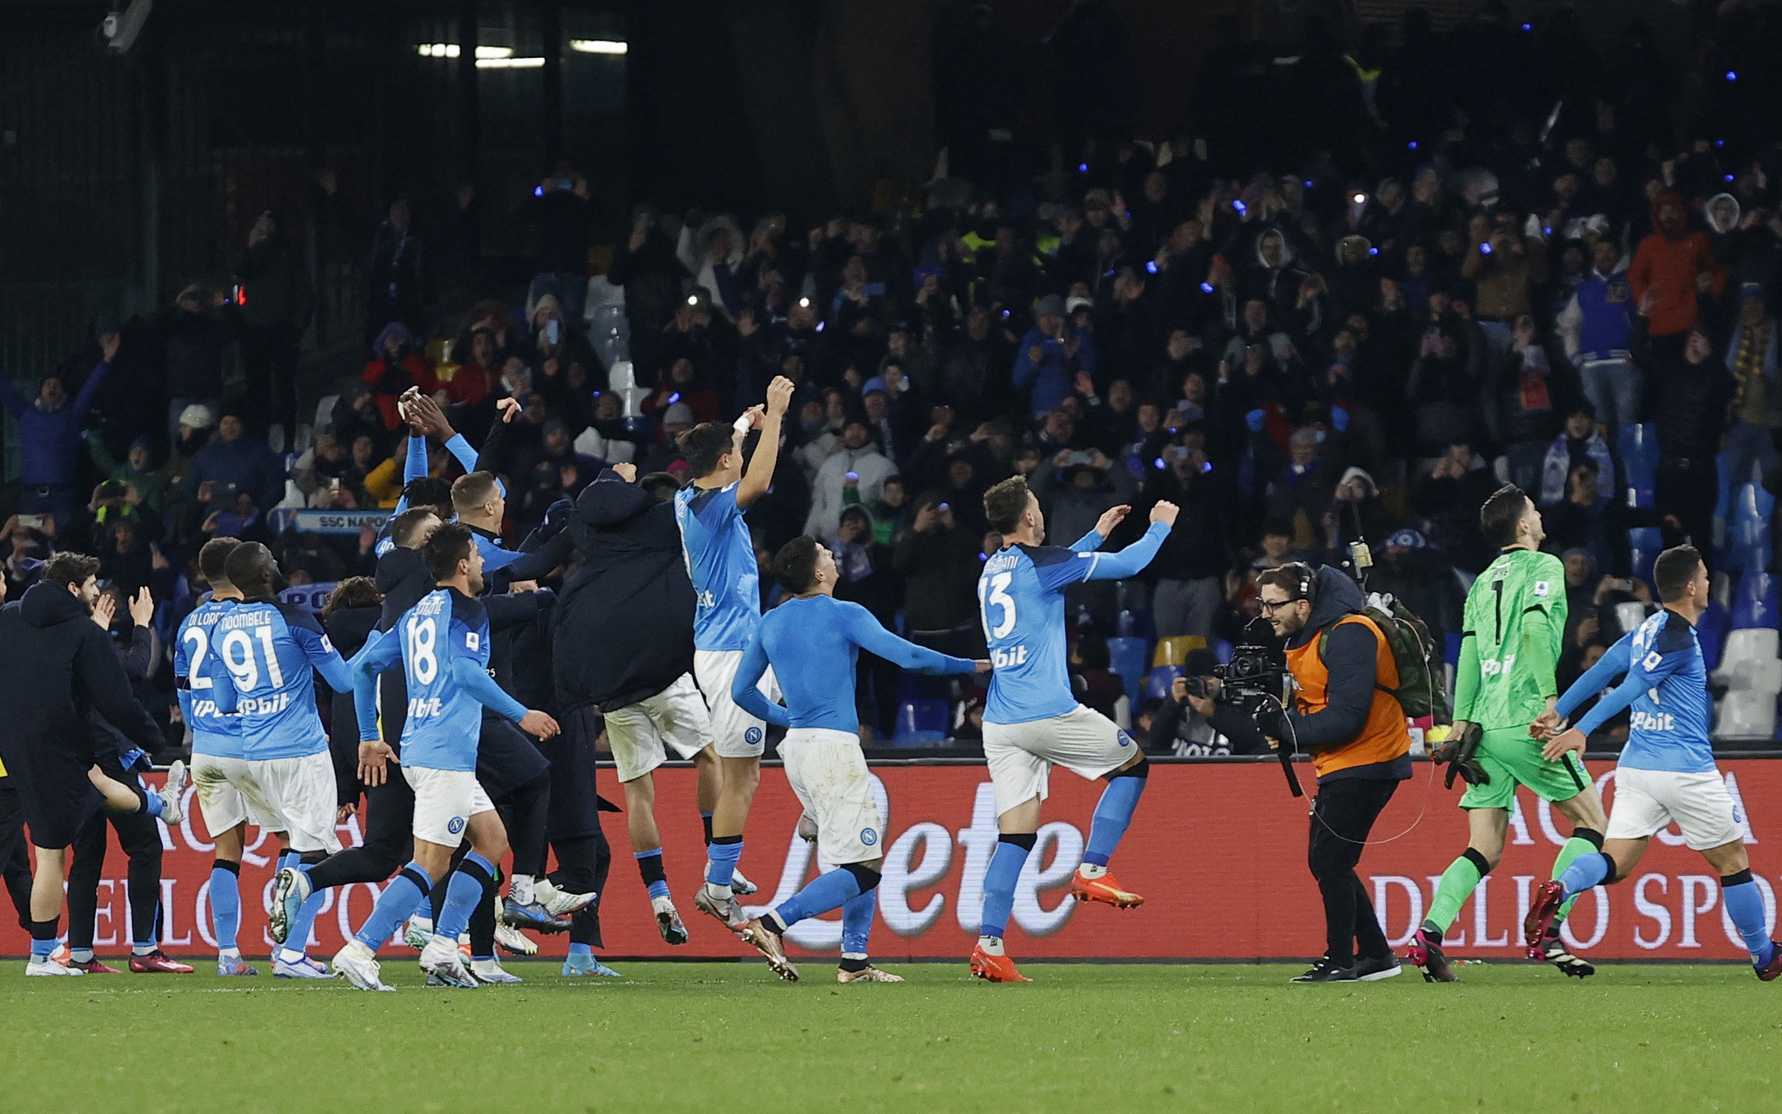 Đánh bại AS Roma của Mourinho, Napoli bỏ xa Inter Milan 13 điểm